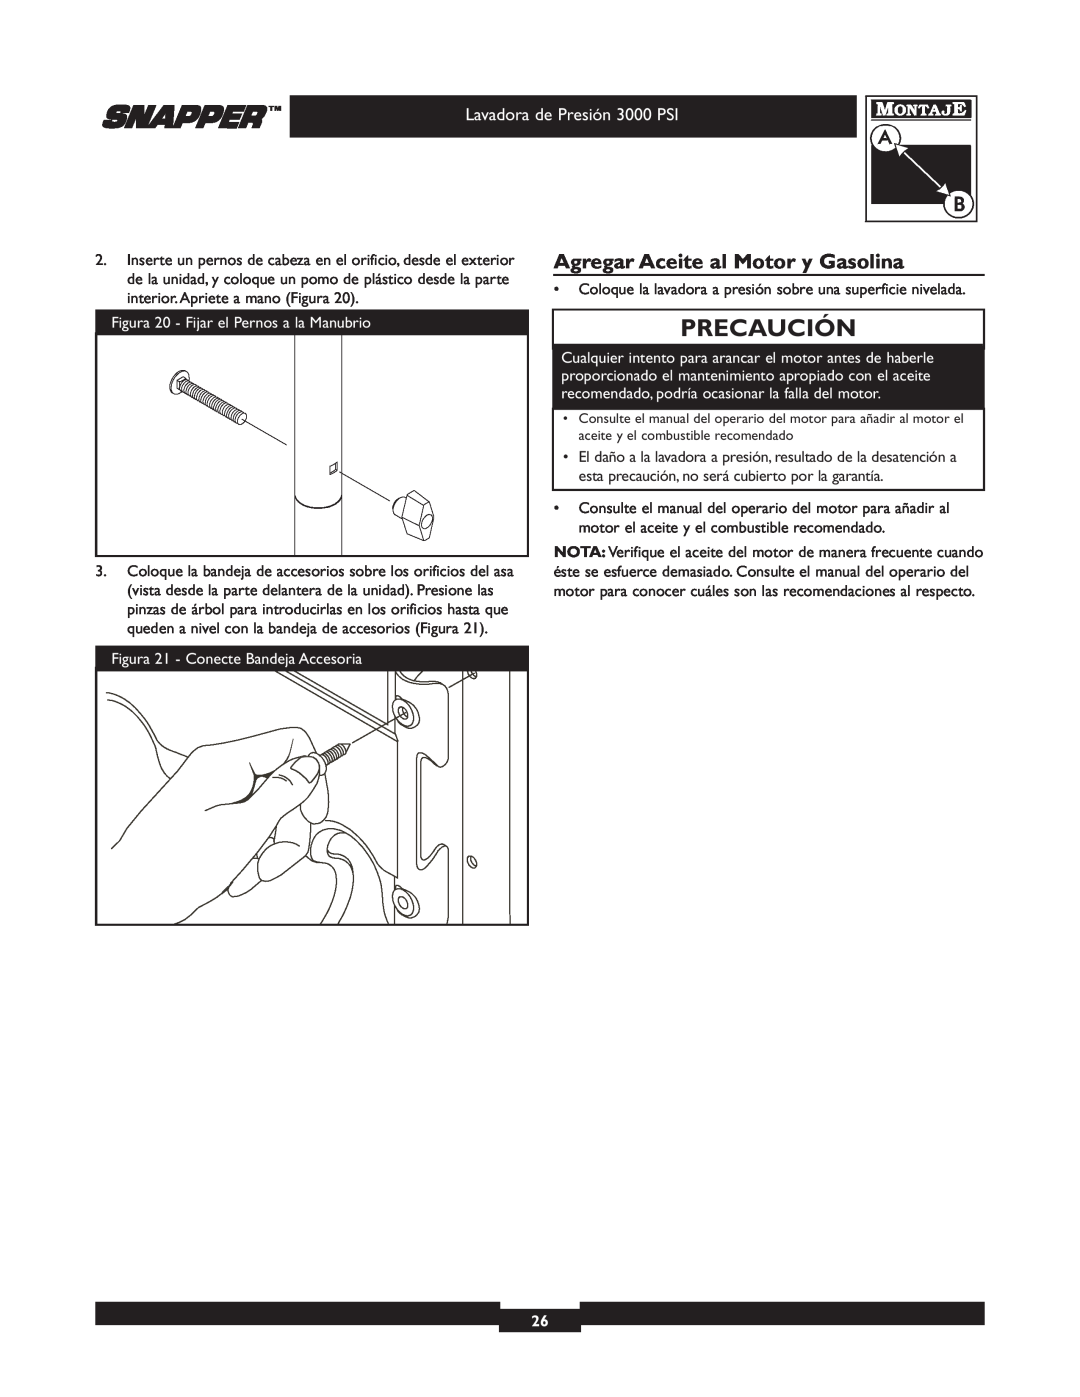 Snapper 020231-2 manual Agregar Aceite al Motor y Gasolina, Precaución, Lavadora de Presión 3000 PSI 